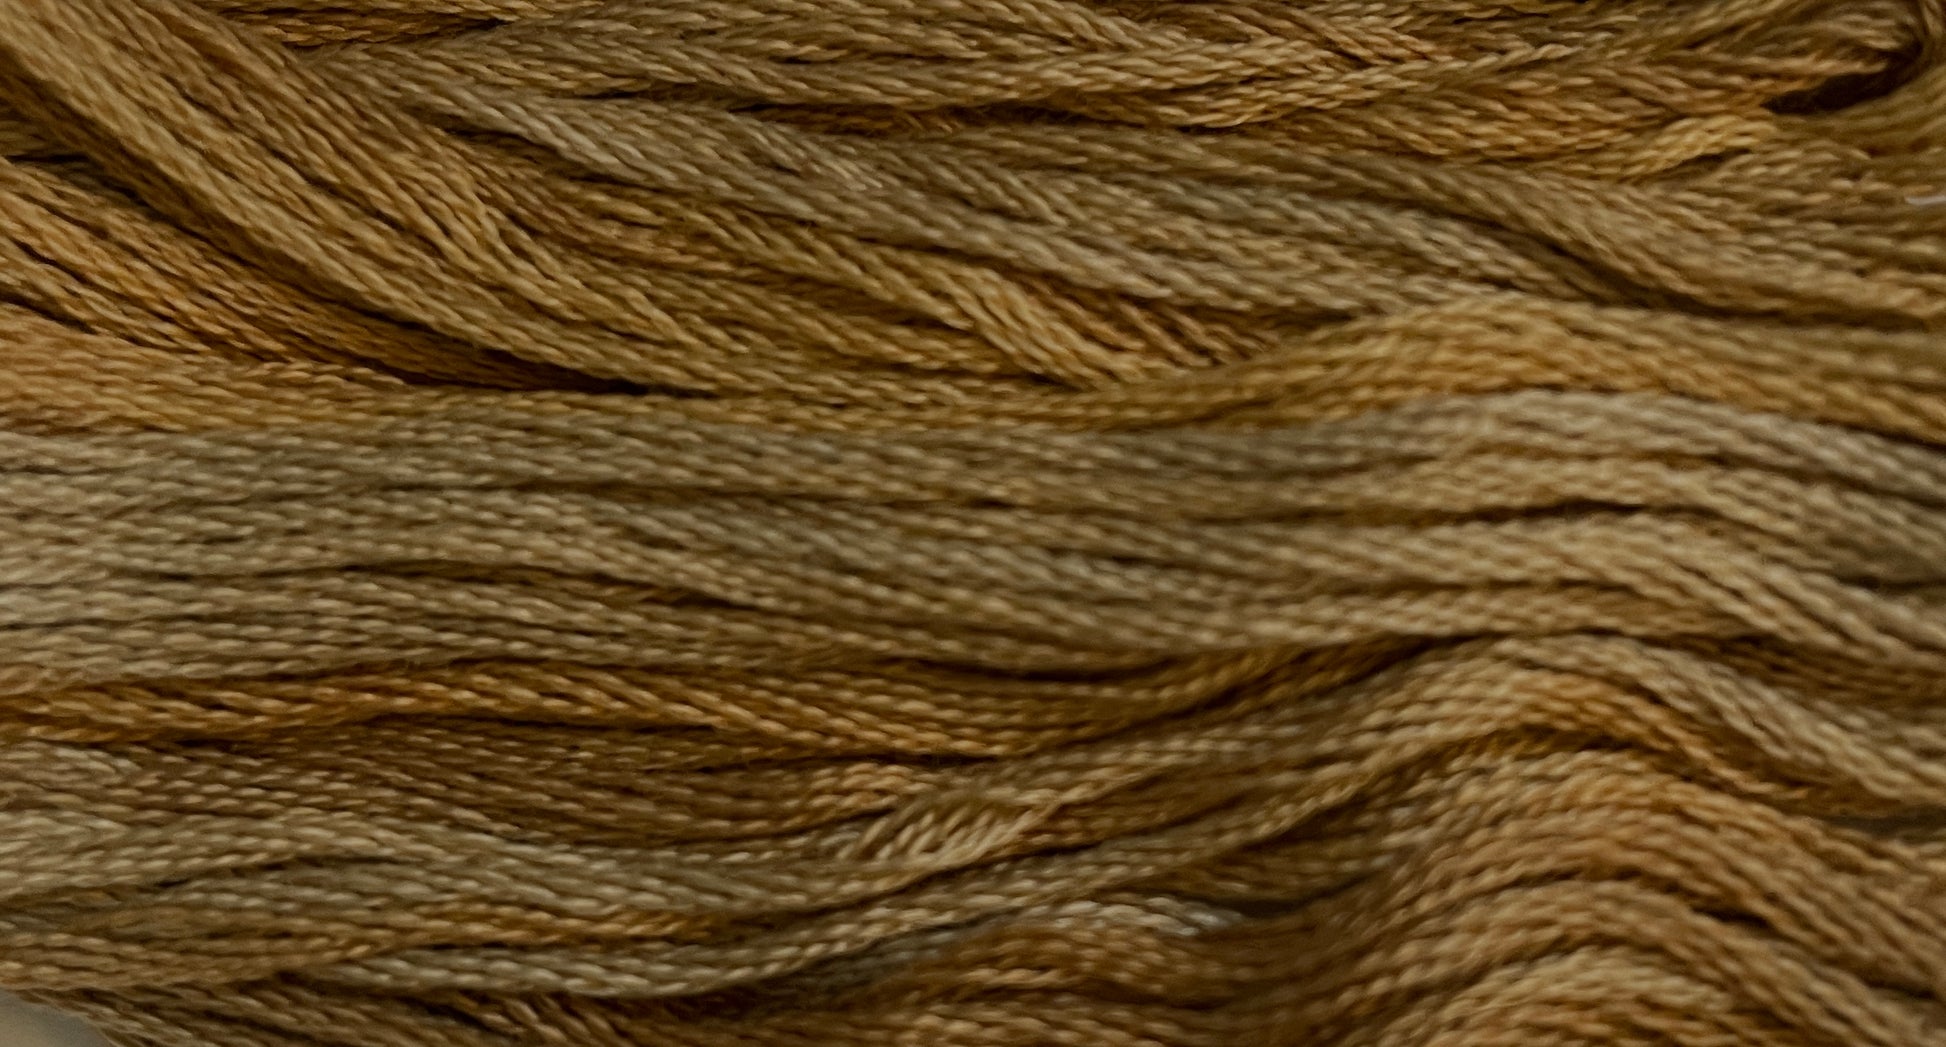 Cidermilll Brown - Gentle Arts Cotton Thread - 5 yard Skein - Cross Stitch Floss, Thread & Floss, Thread & Floss, The Crafty Grimalkin - A Cross Stitch Store